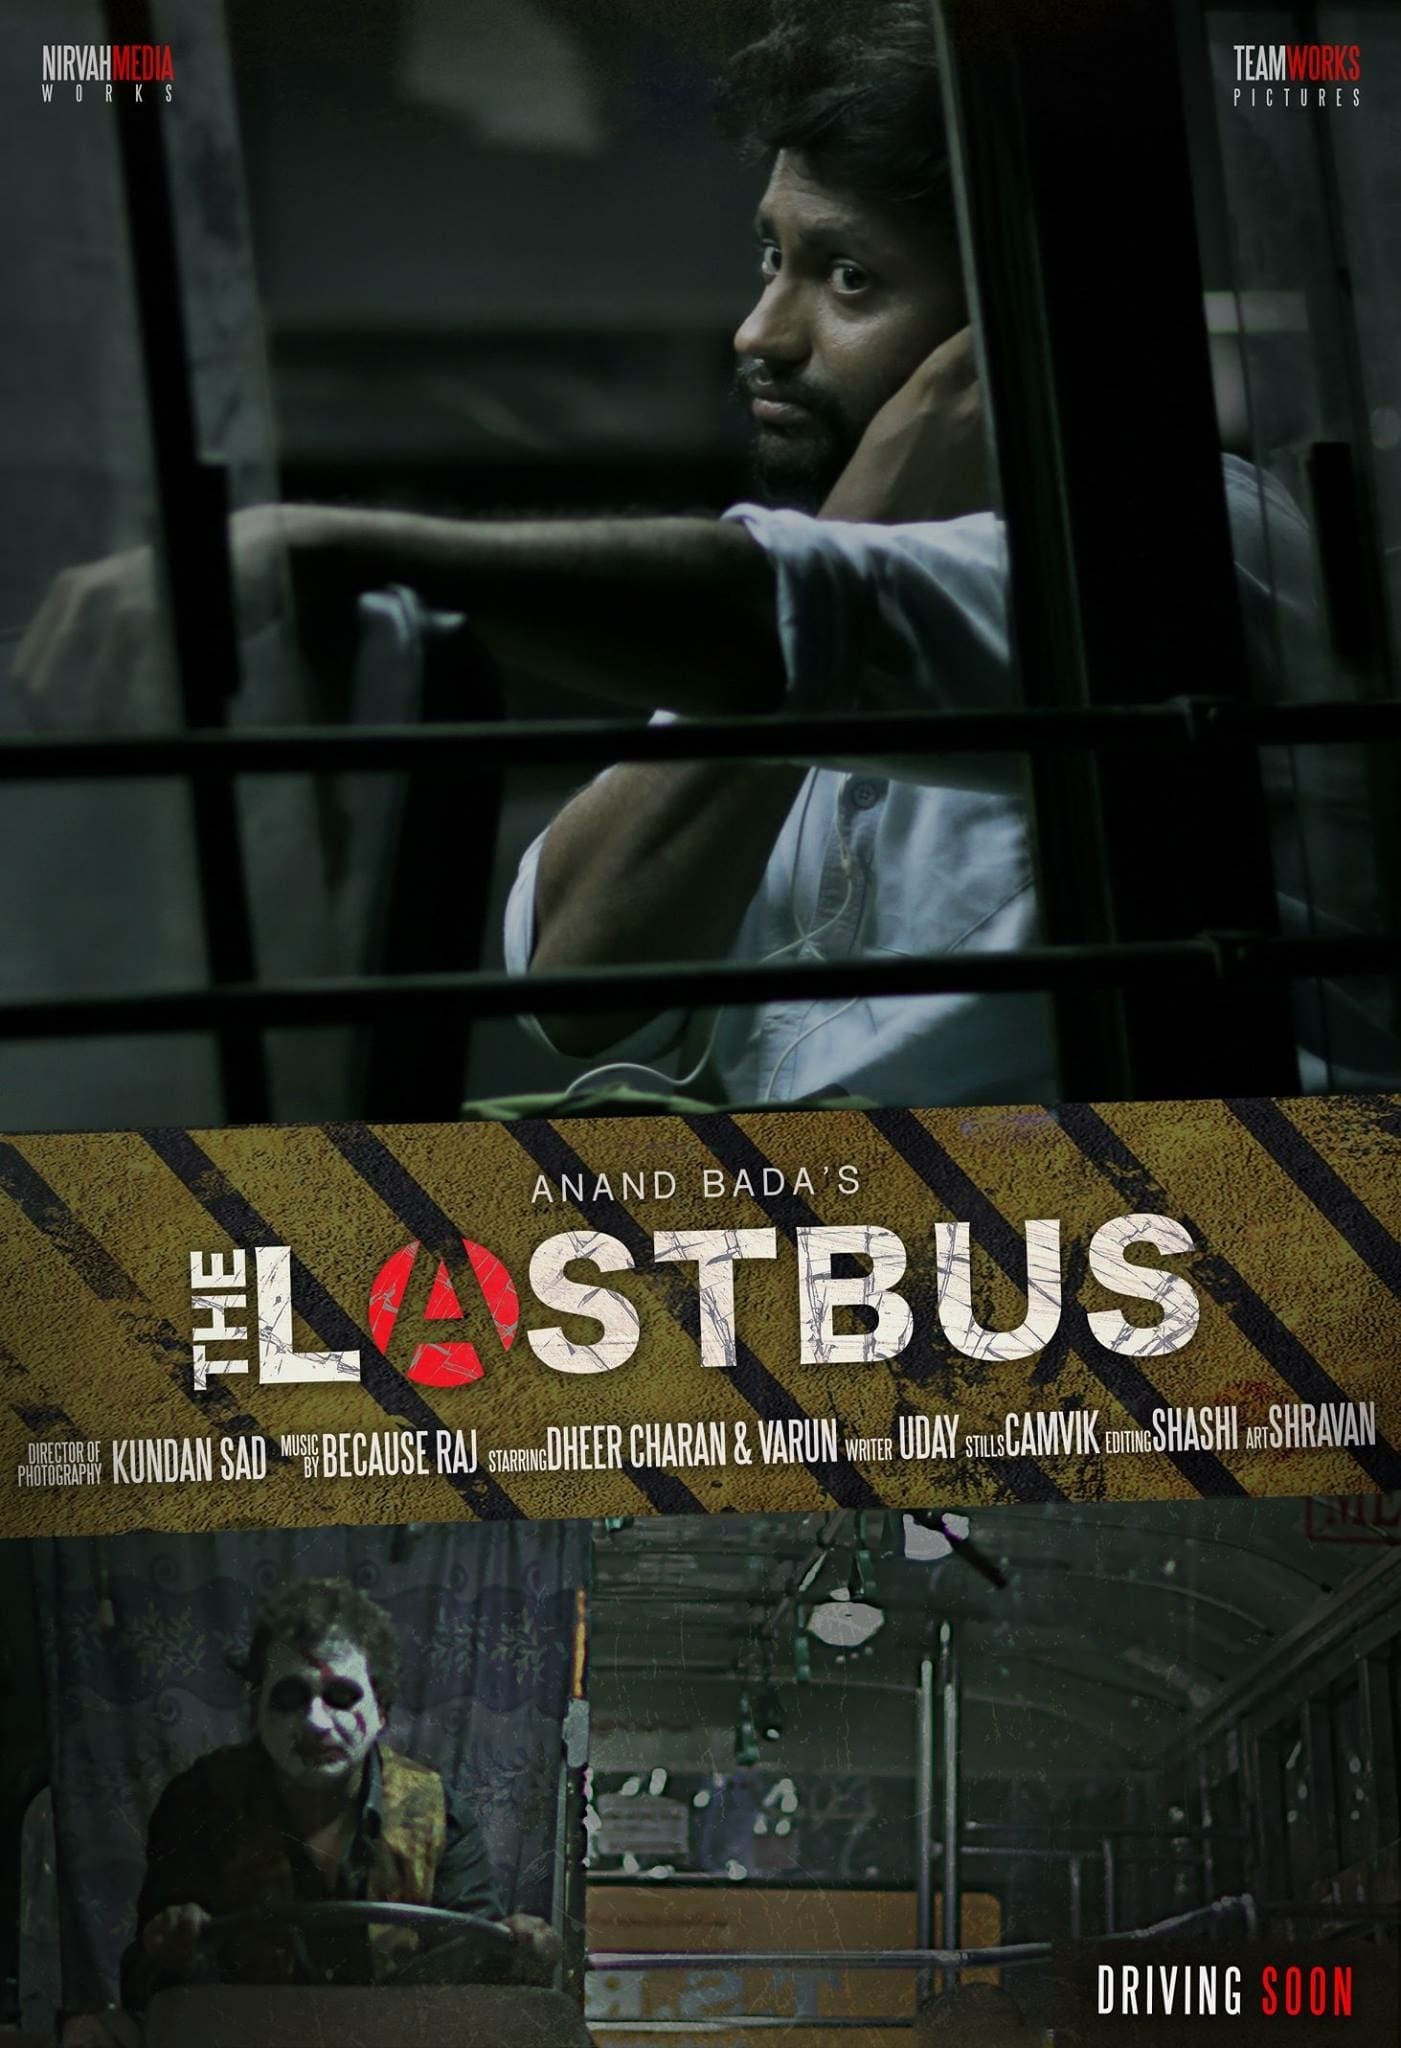 Last Bus